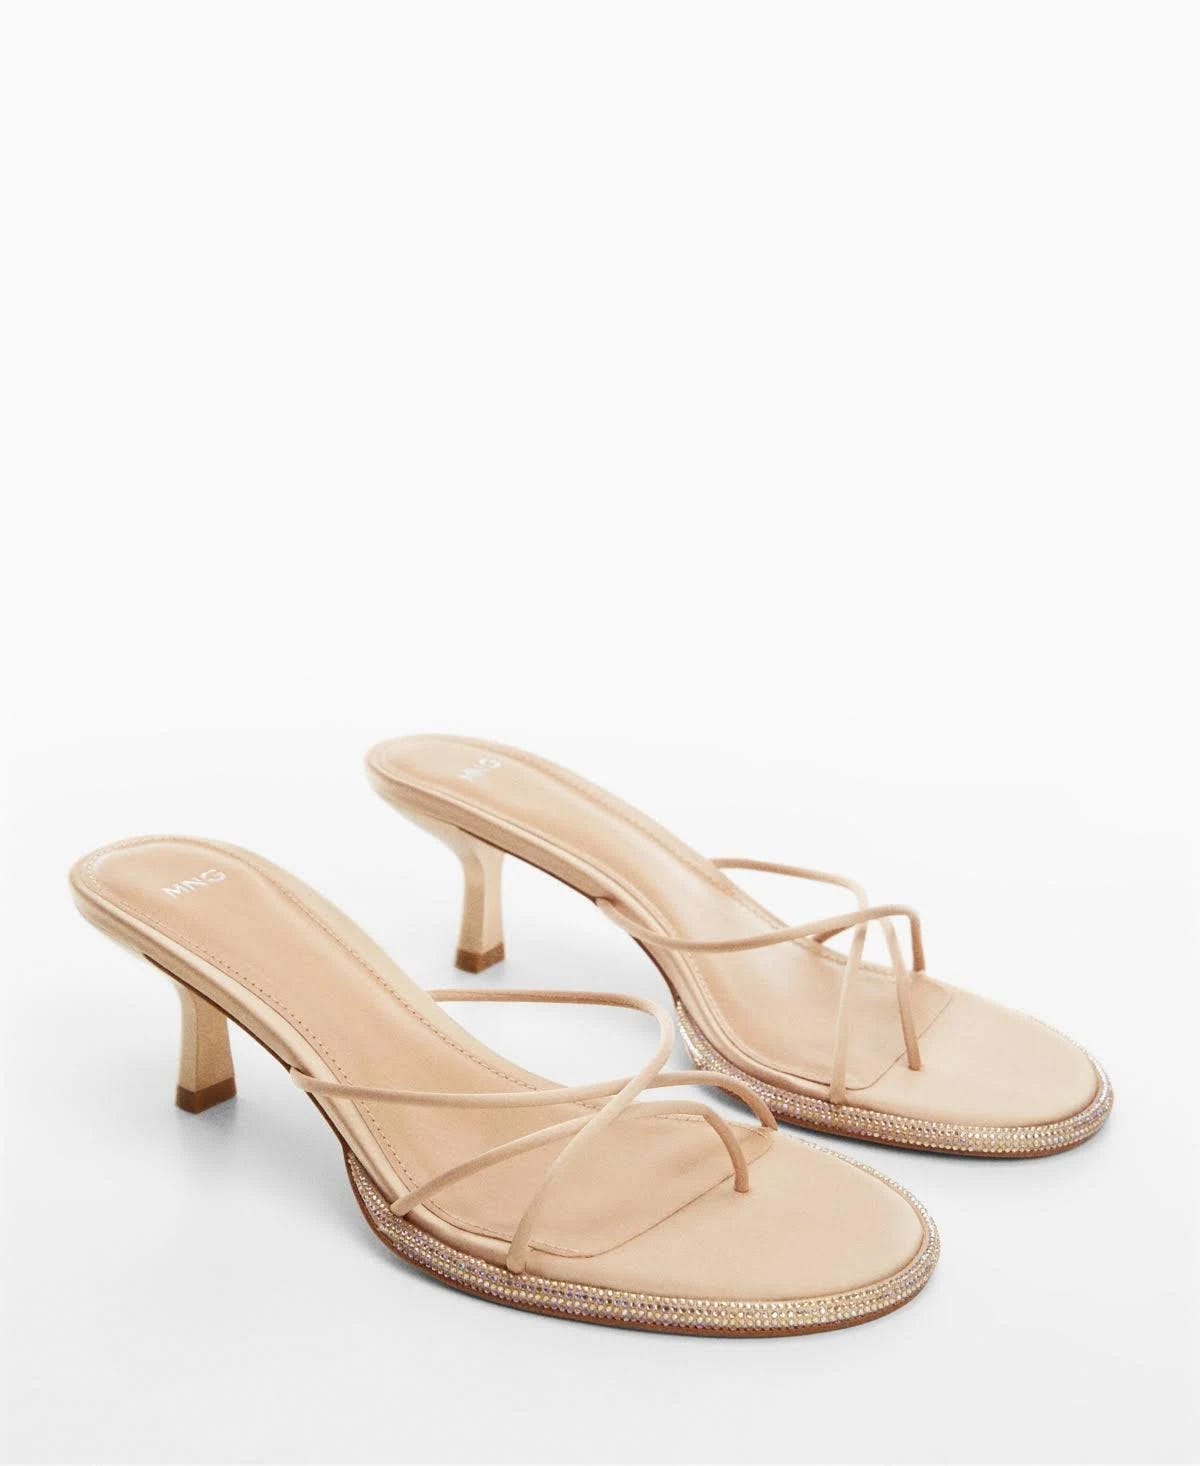 Bling-Inspired Embellished Heeled Sandals | Image